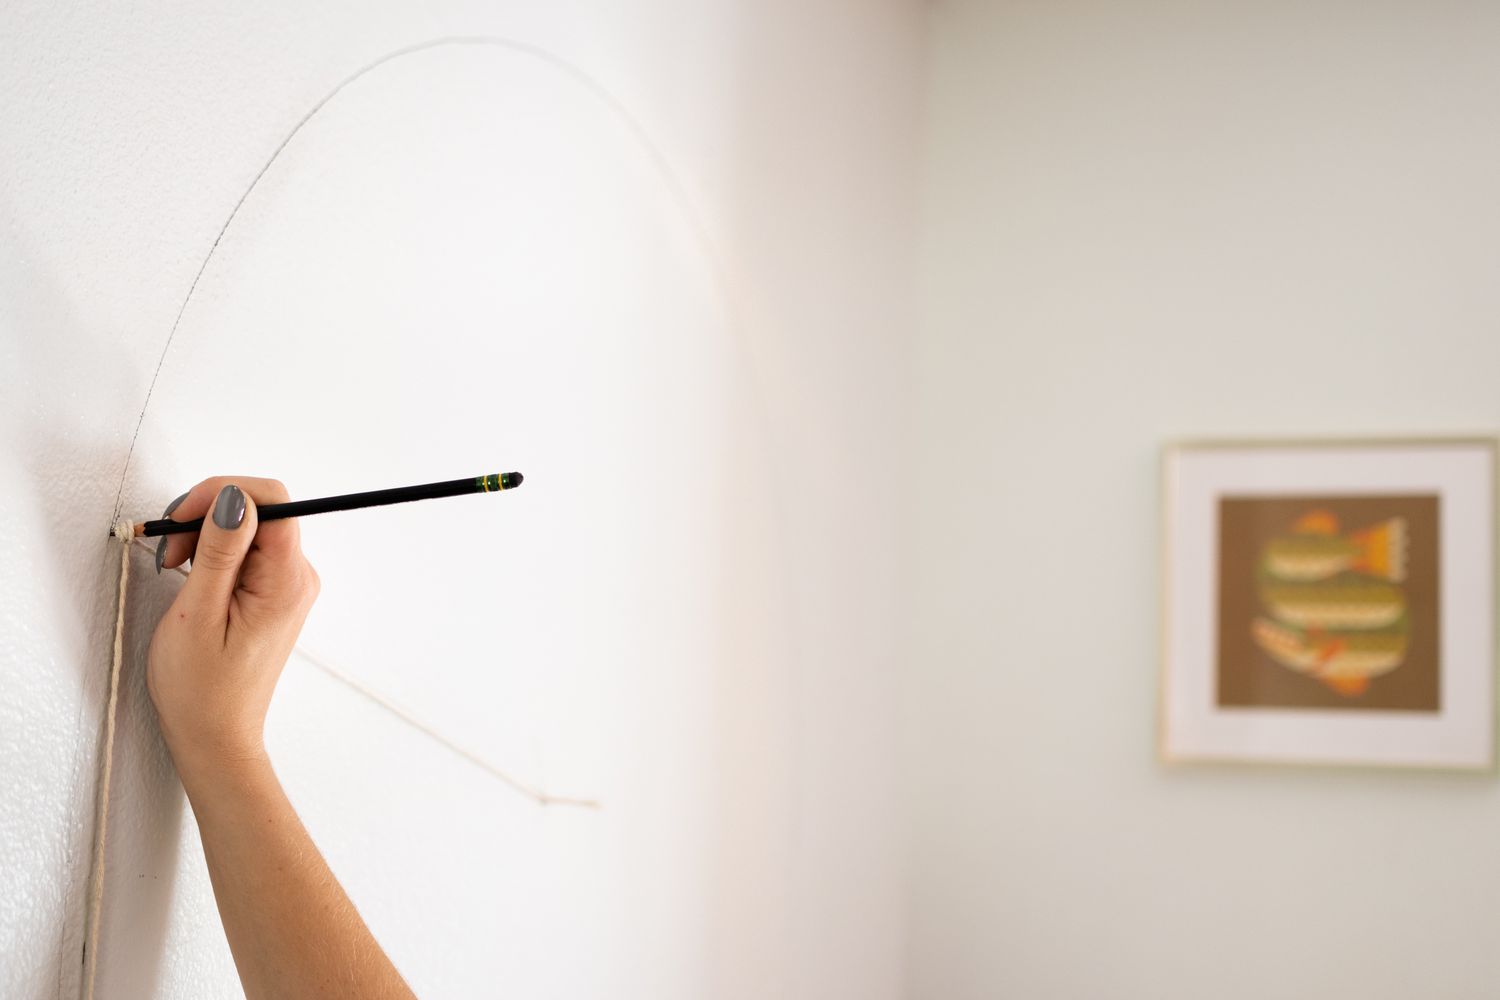 Bogenform mit Bleistift und Schnur zum Messen an die Wand gezeichnet